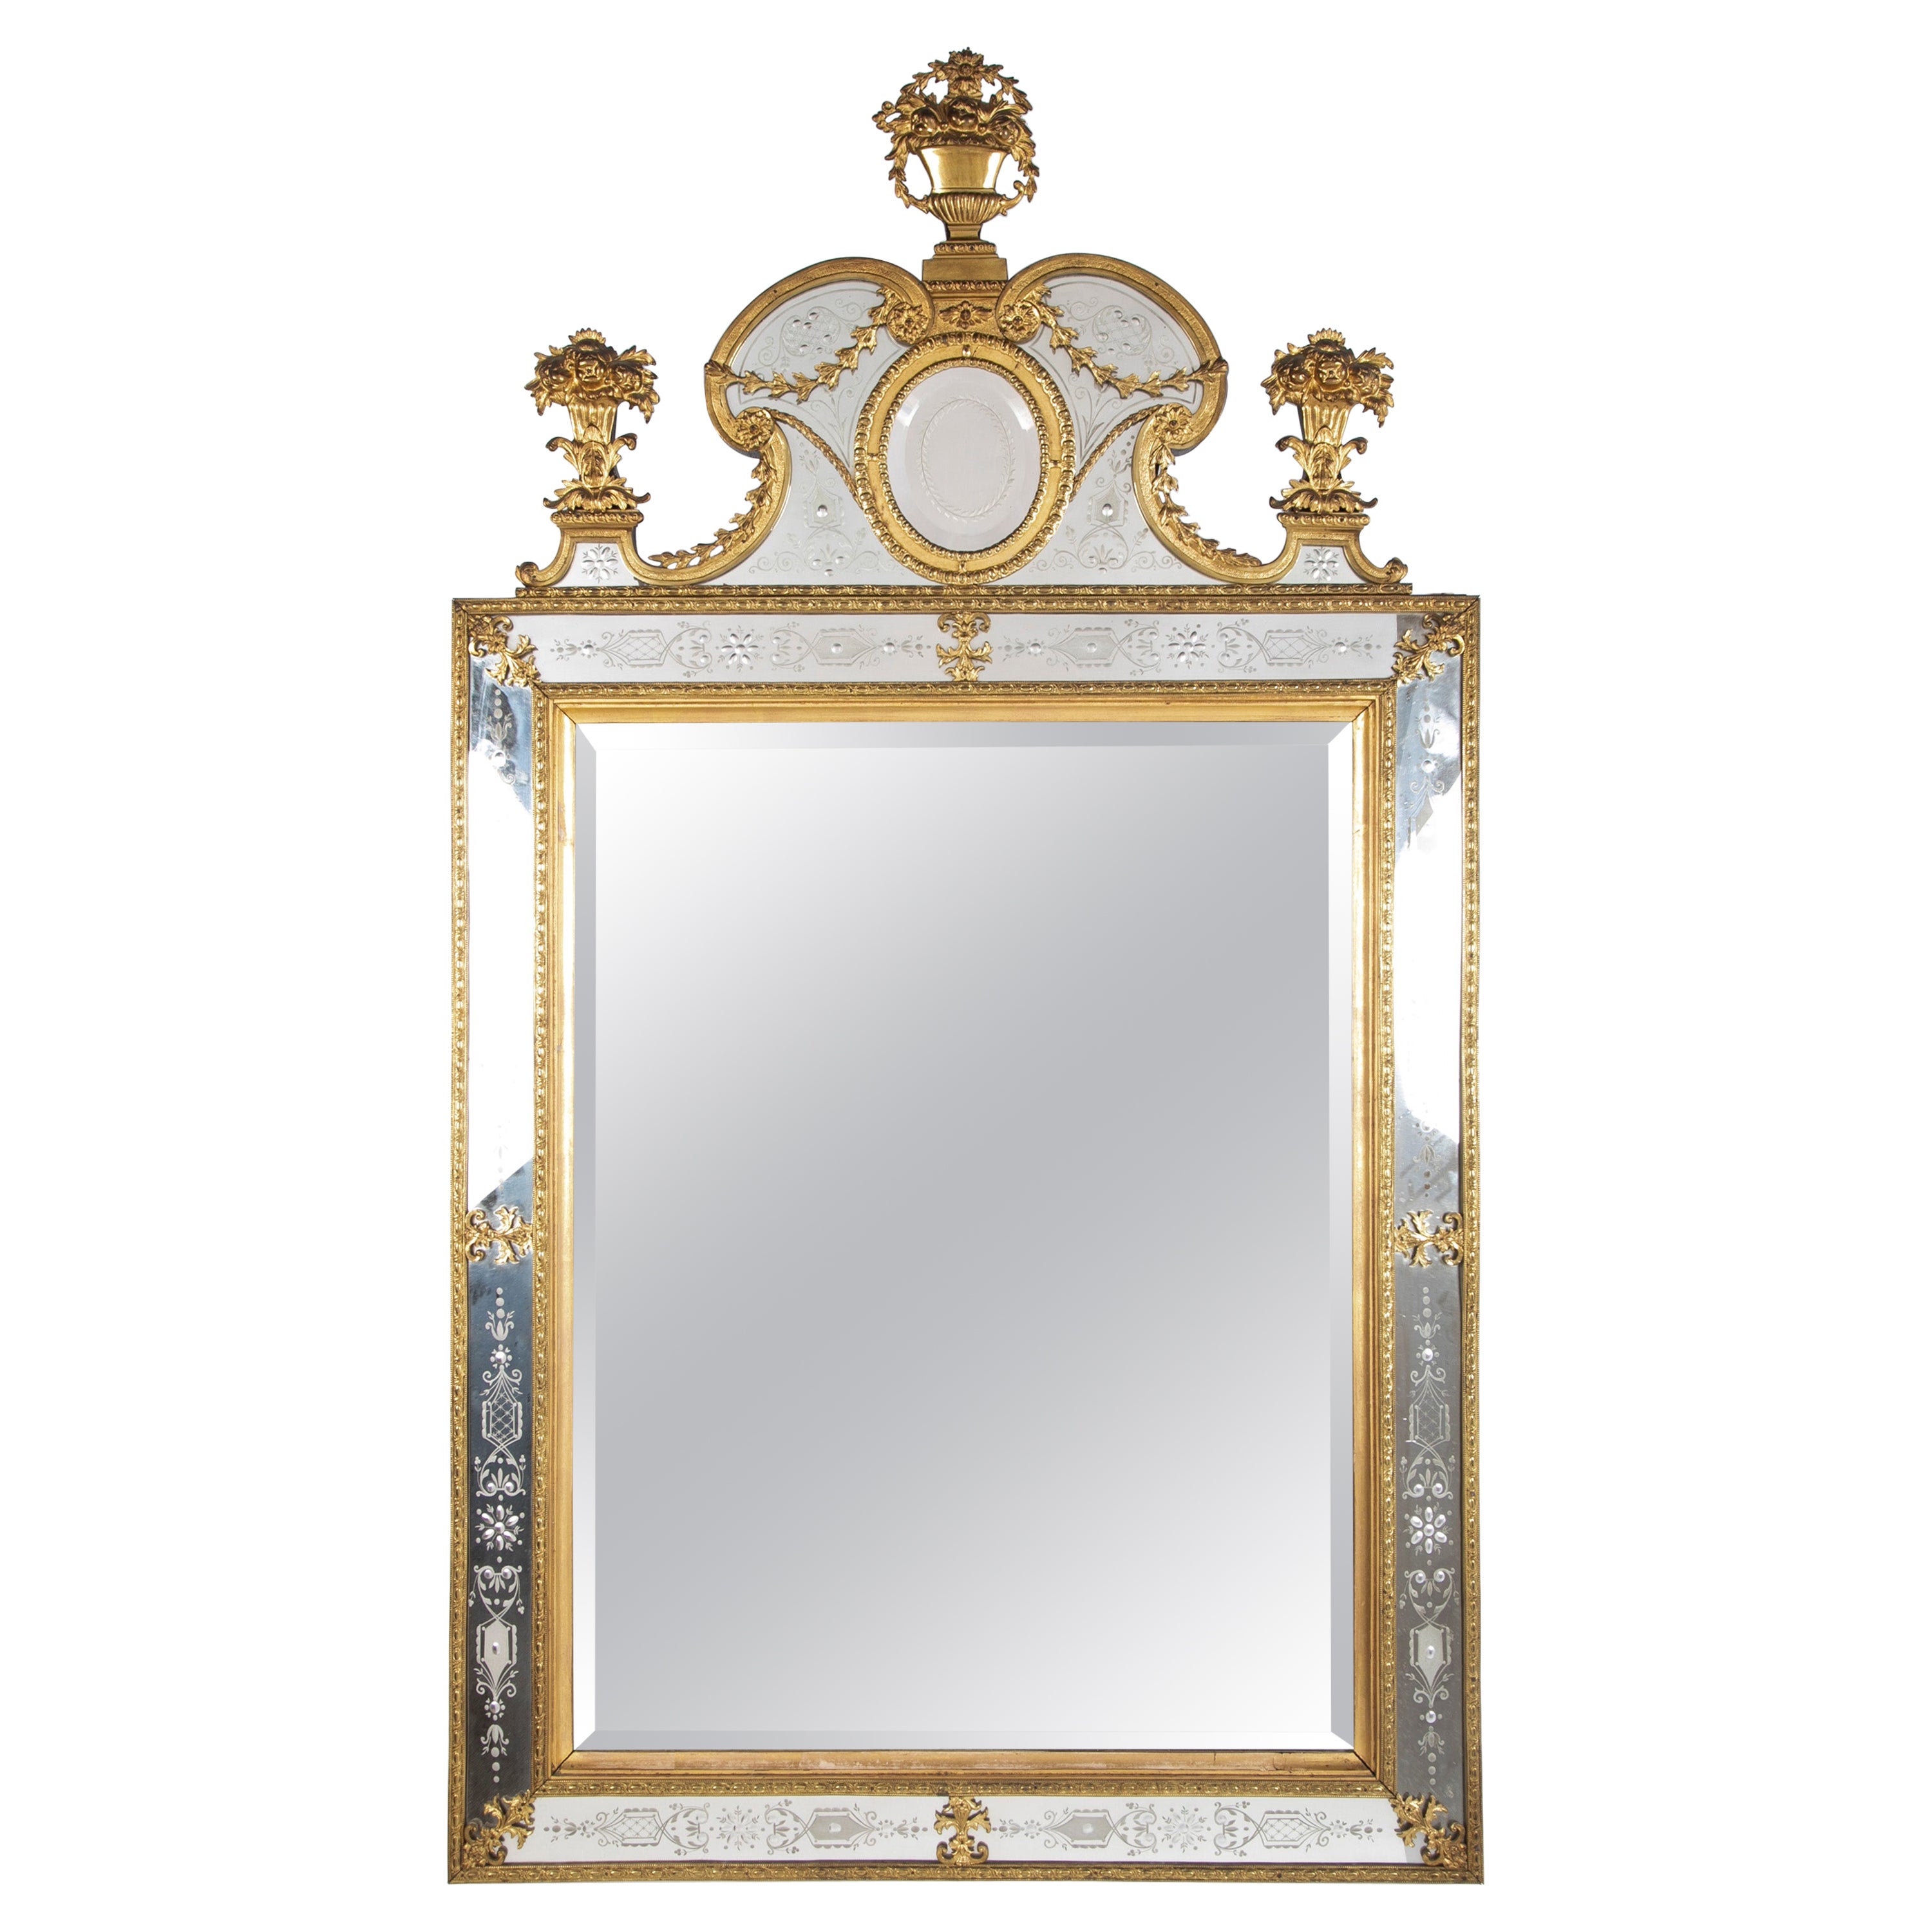 Schwedischer neoklassizistischer Spiegel aus Goldbronze und geätztem Glas, entworfen von Burchard Precht